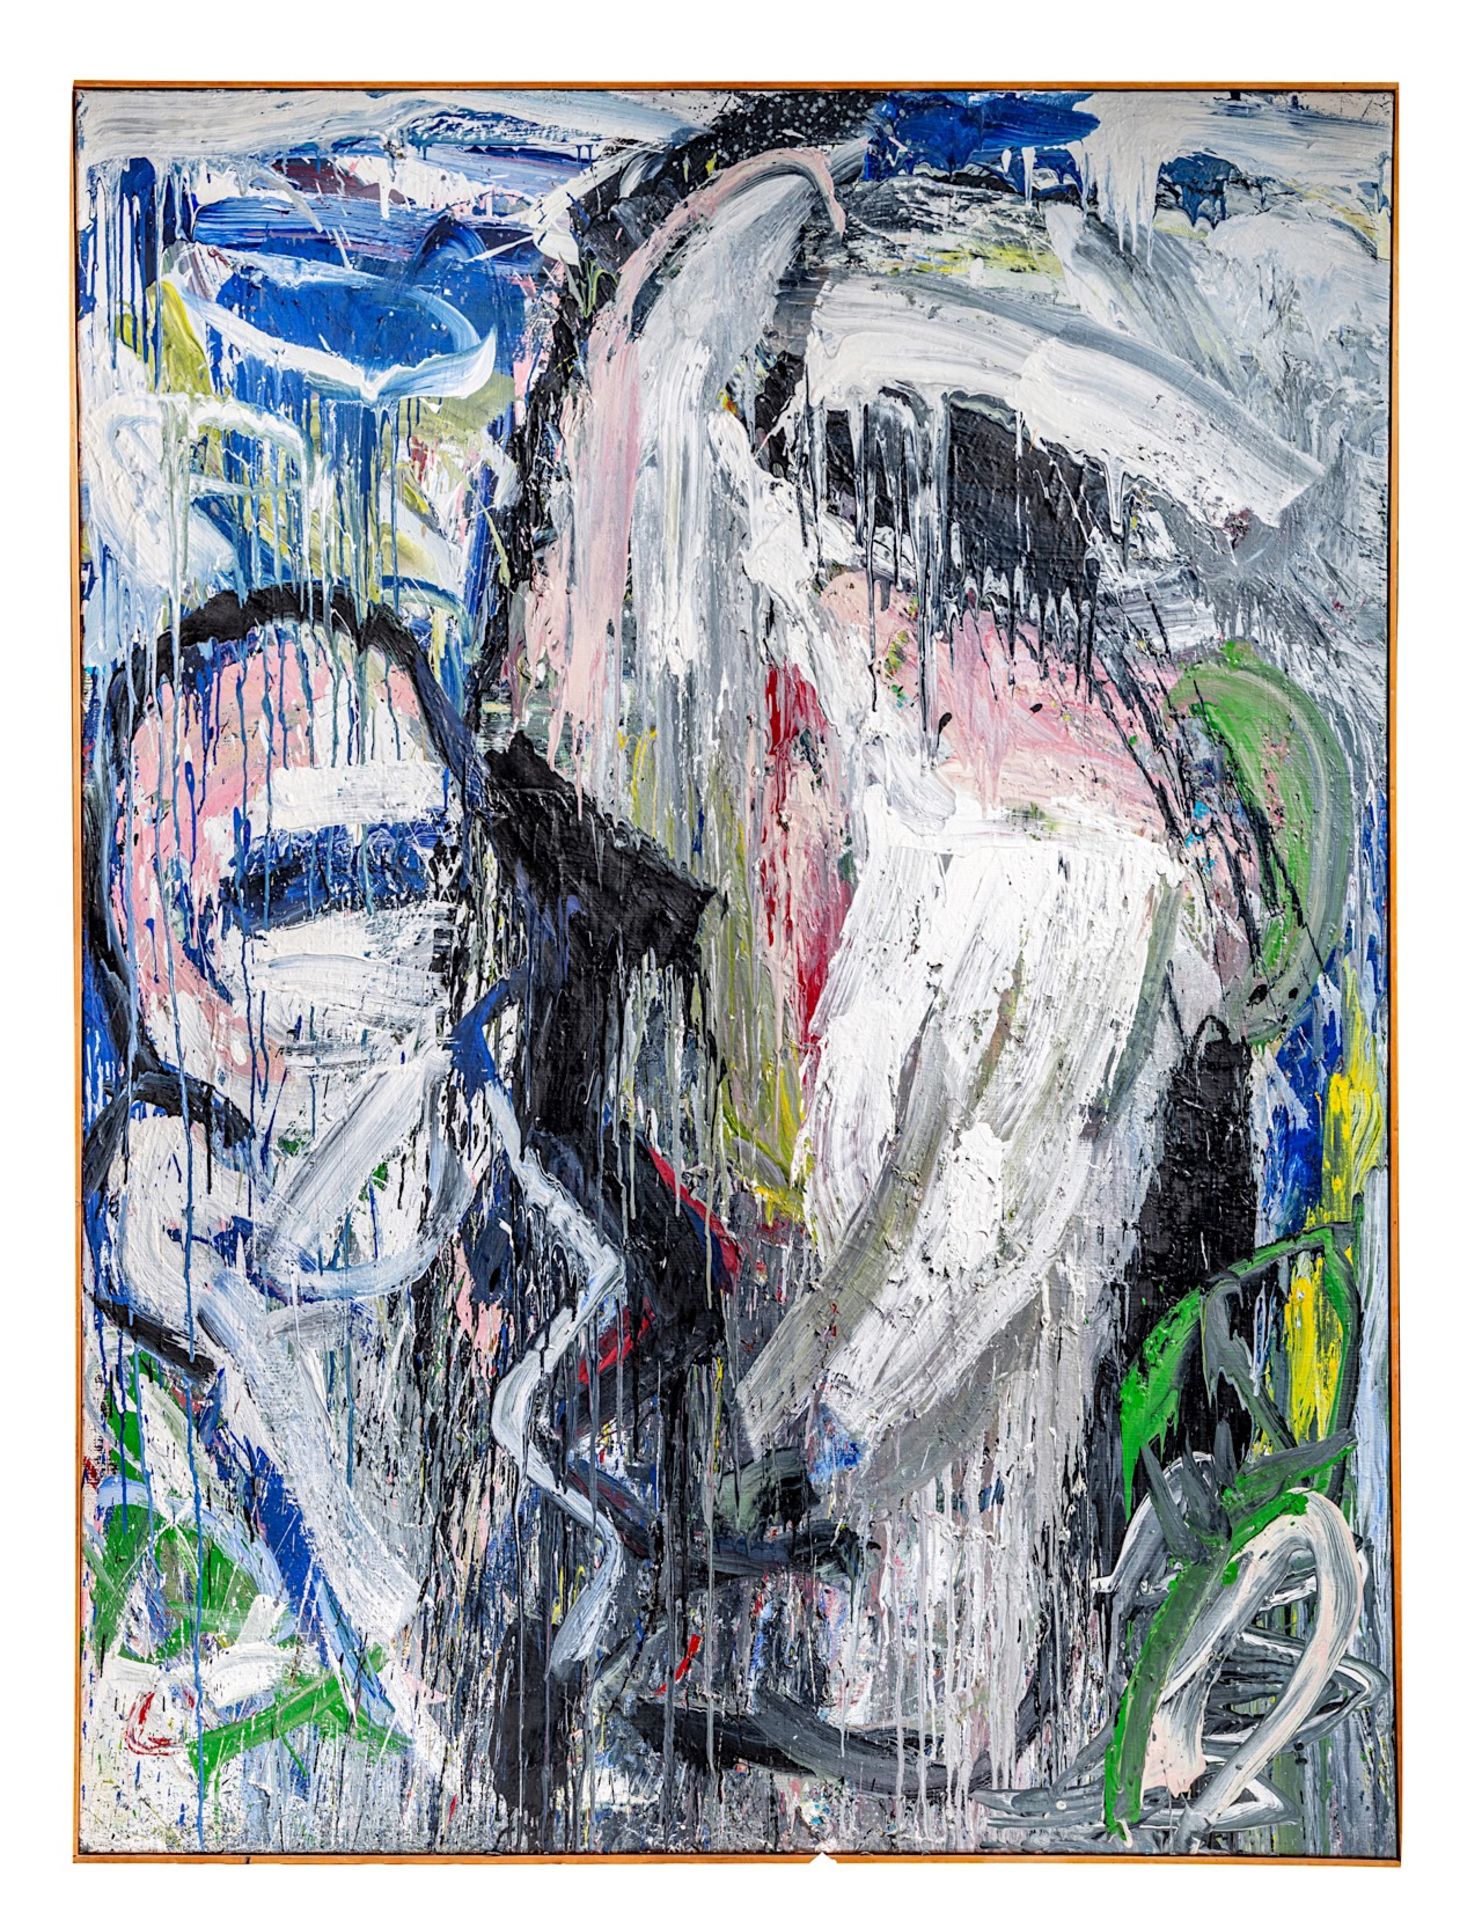 PREMIUM LOT - Philippe Vandenberg (1952-2009), 'Schilderij', diptych, 1985, oil on canvas - Bild 8 aus 12